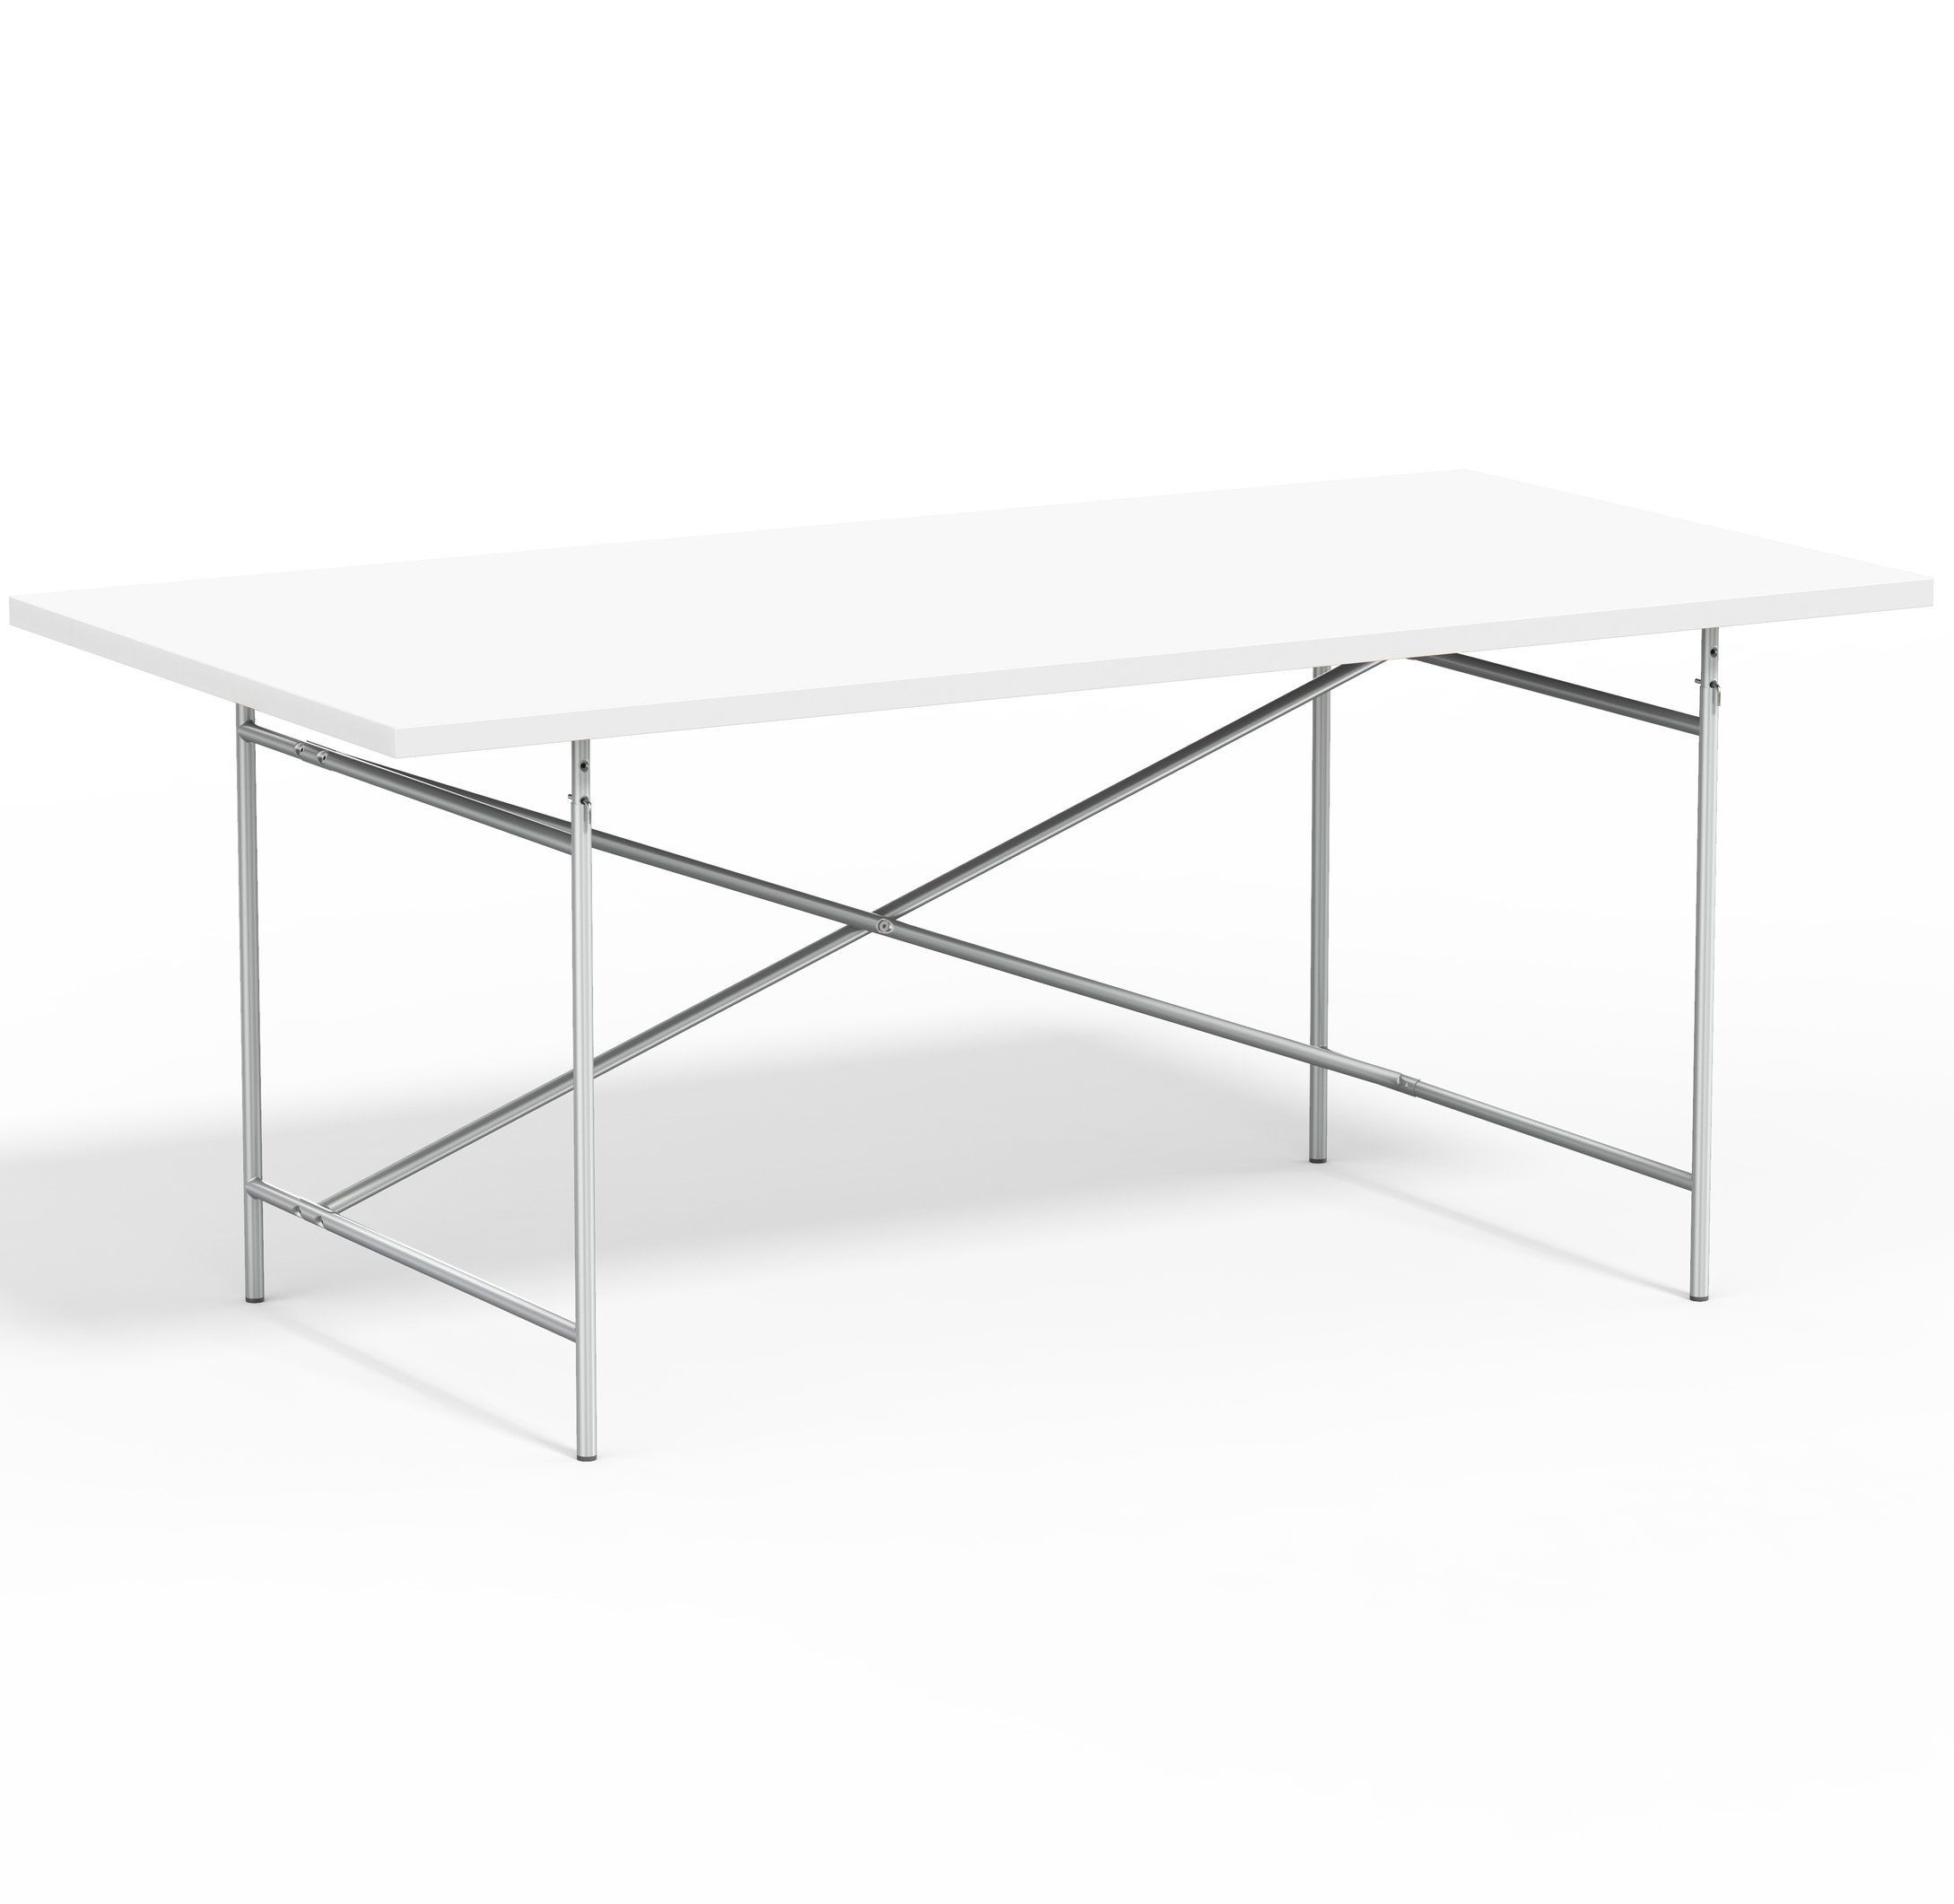 Lampert Eiermann Tischgestell 2 - 135 x 78 cm - Silber - Melmain weiß full--49